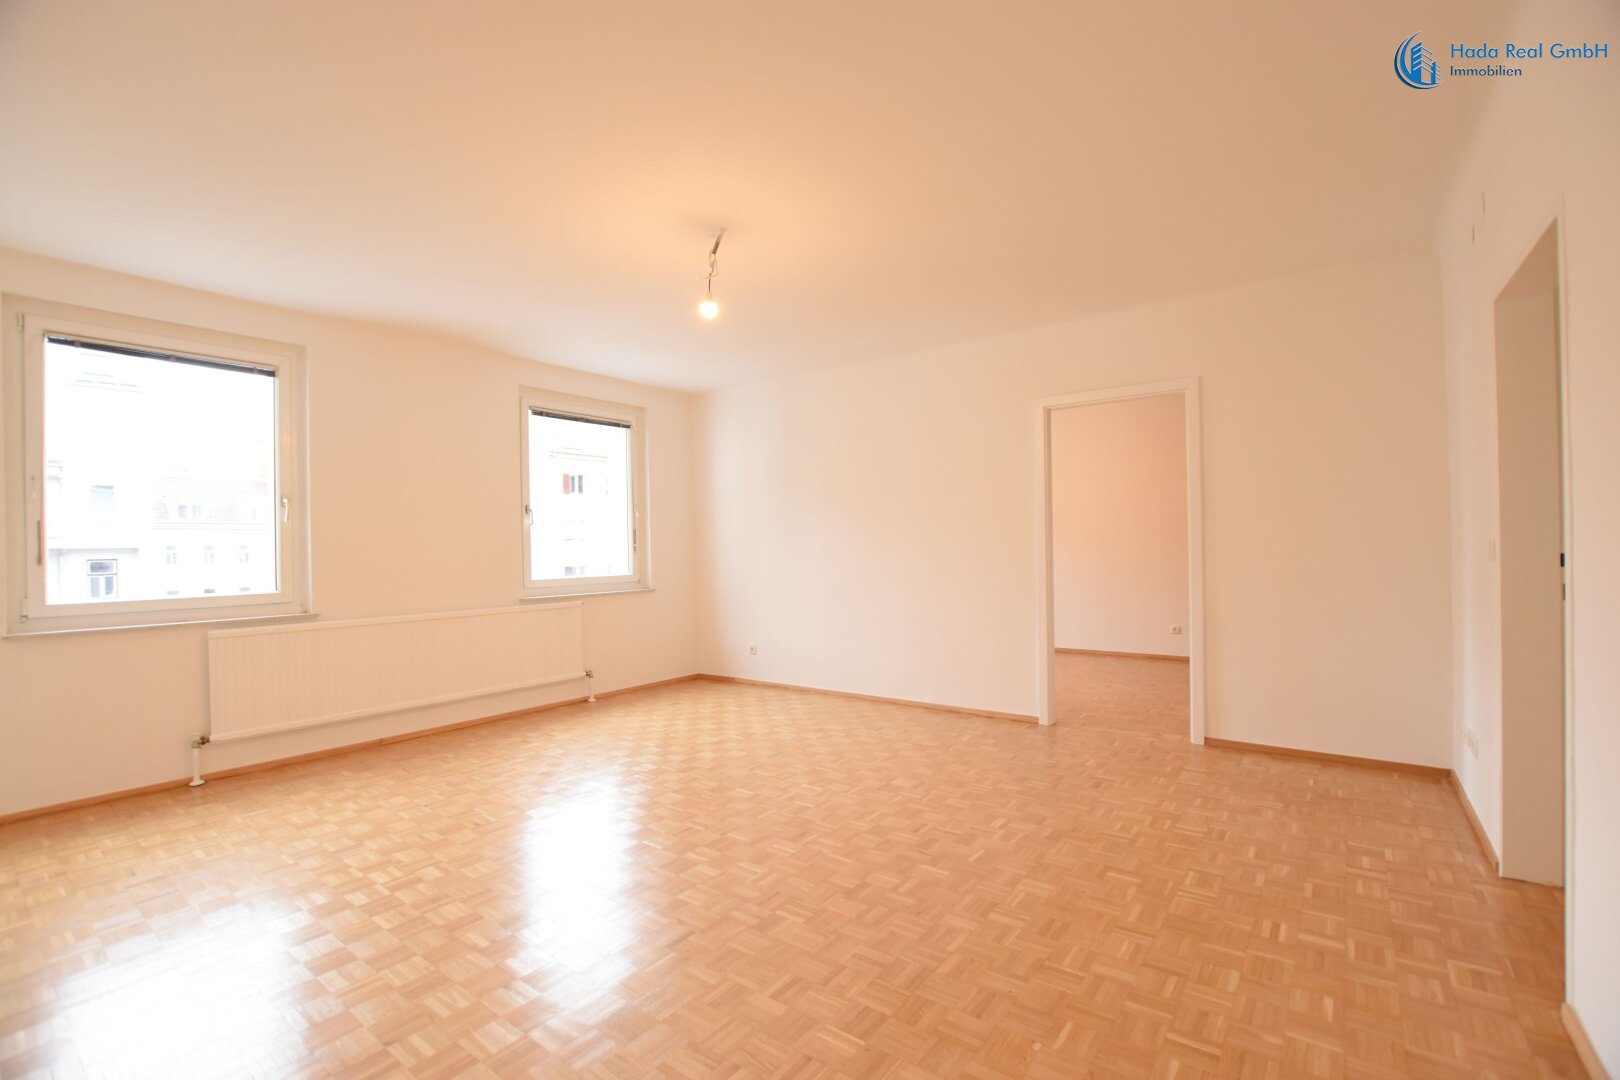 Provisionsfrei: Wohnung direkt vom Eigentümer in 1100 Wien